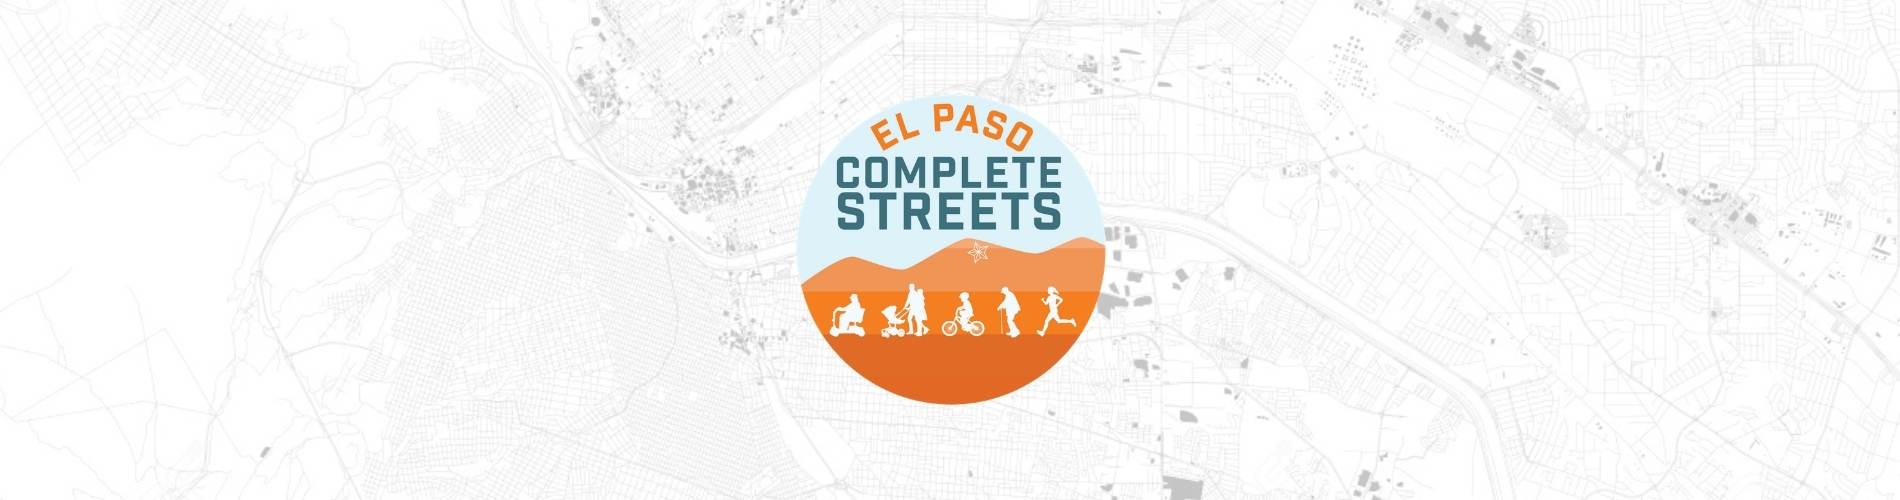 El Paso map with El Paso Complete Streets branded logo